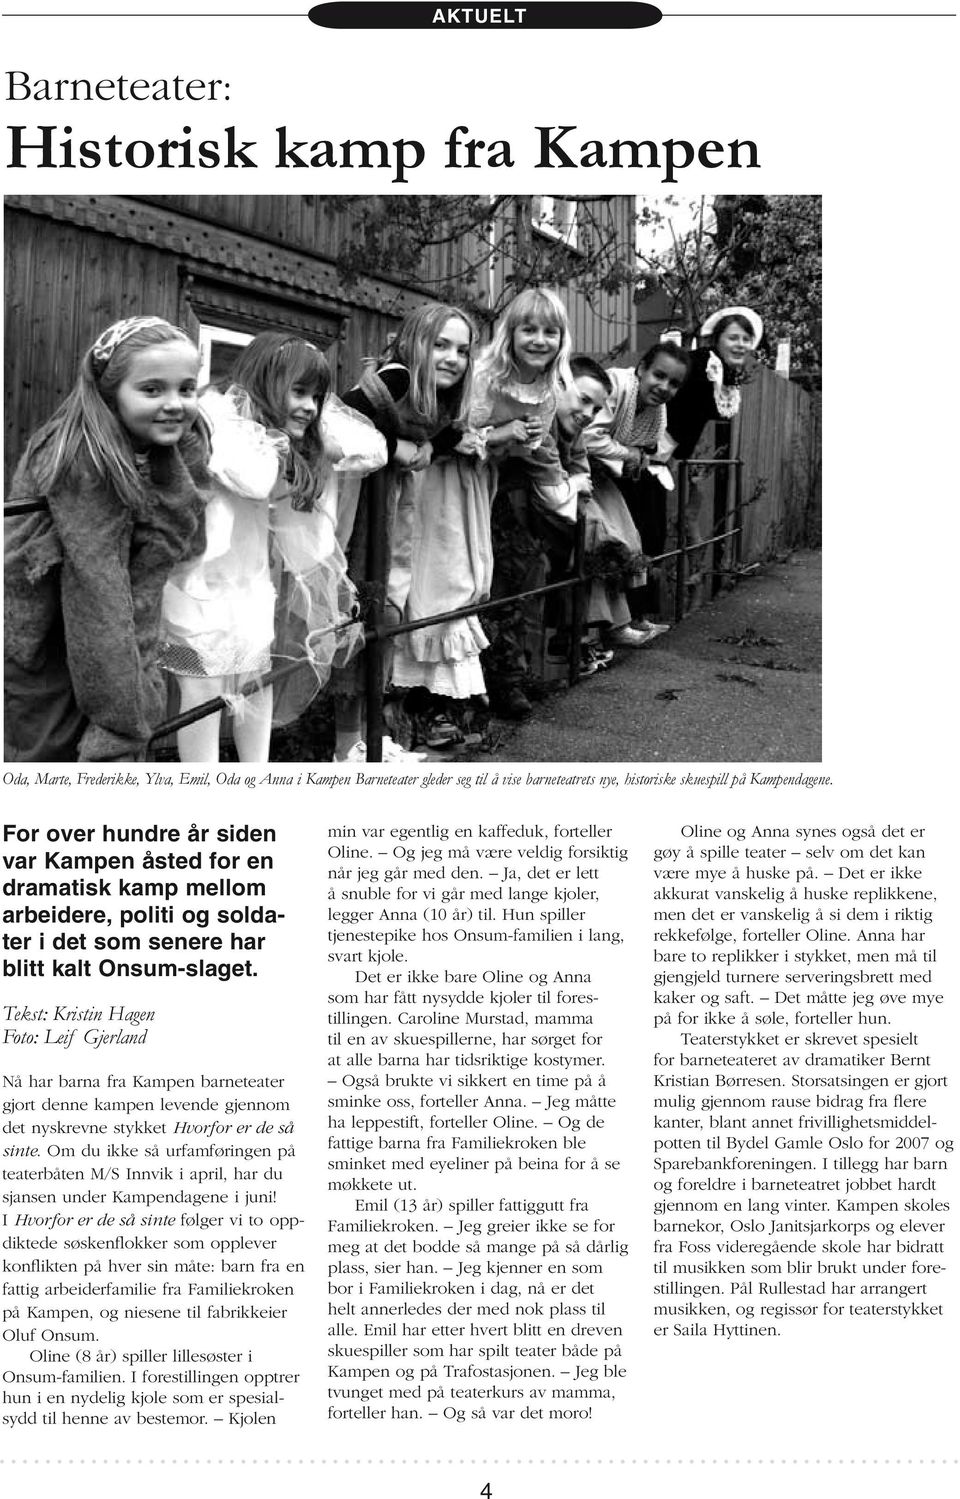 Tekst: Kristin Hagen Foto: Leif Gjerland Nå har barna fra Kampen barneteater gjort denne kampen levende gjennom det nyskrevne stykket Hvorfor er de så sinte.